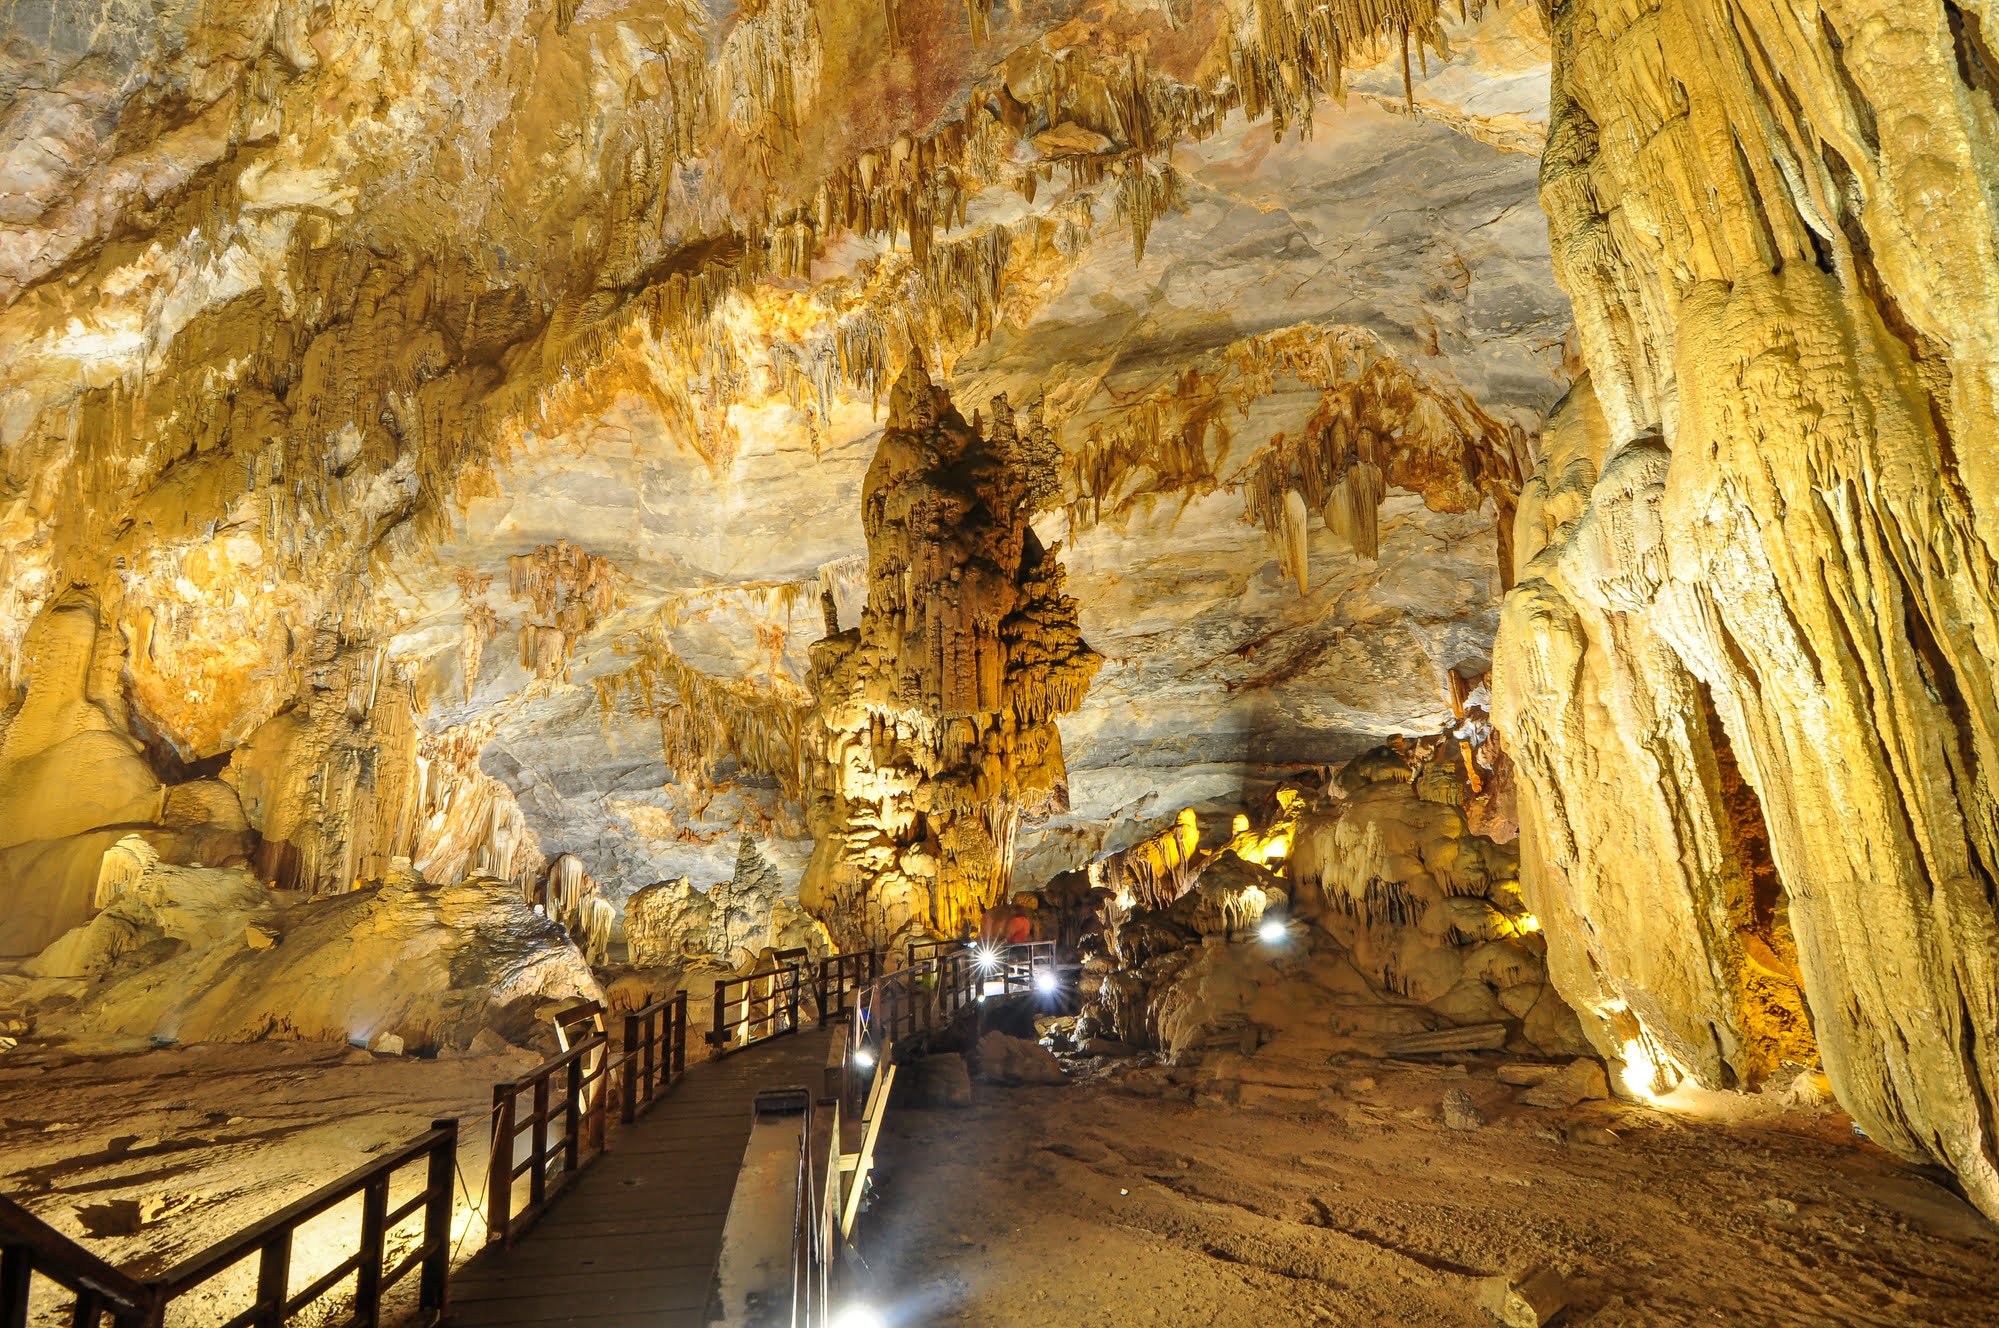 Thien Duong Cave (Paradise Cave) in Phong Nha - Ke Bang National Park, Quang Binh, Vietnam